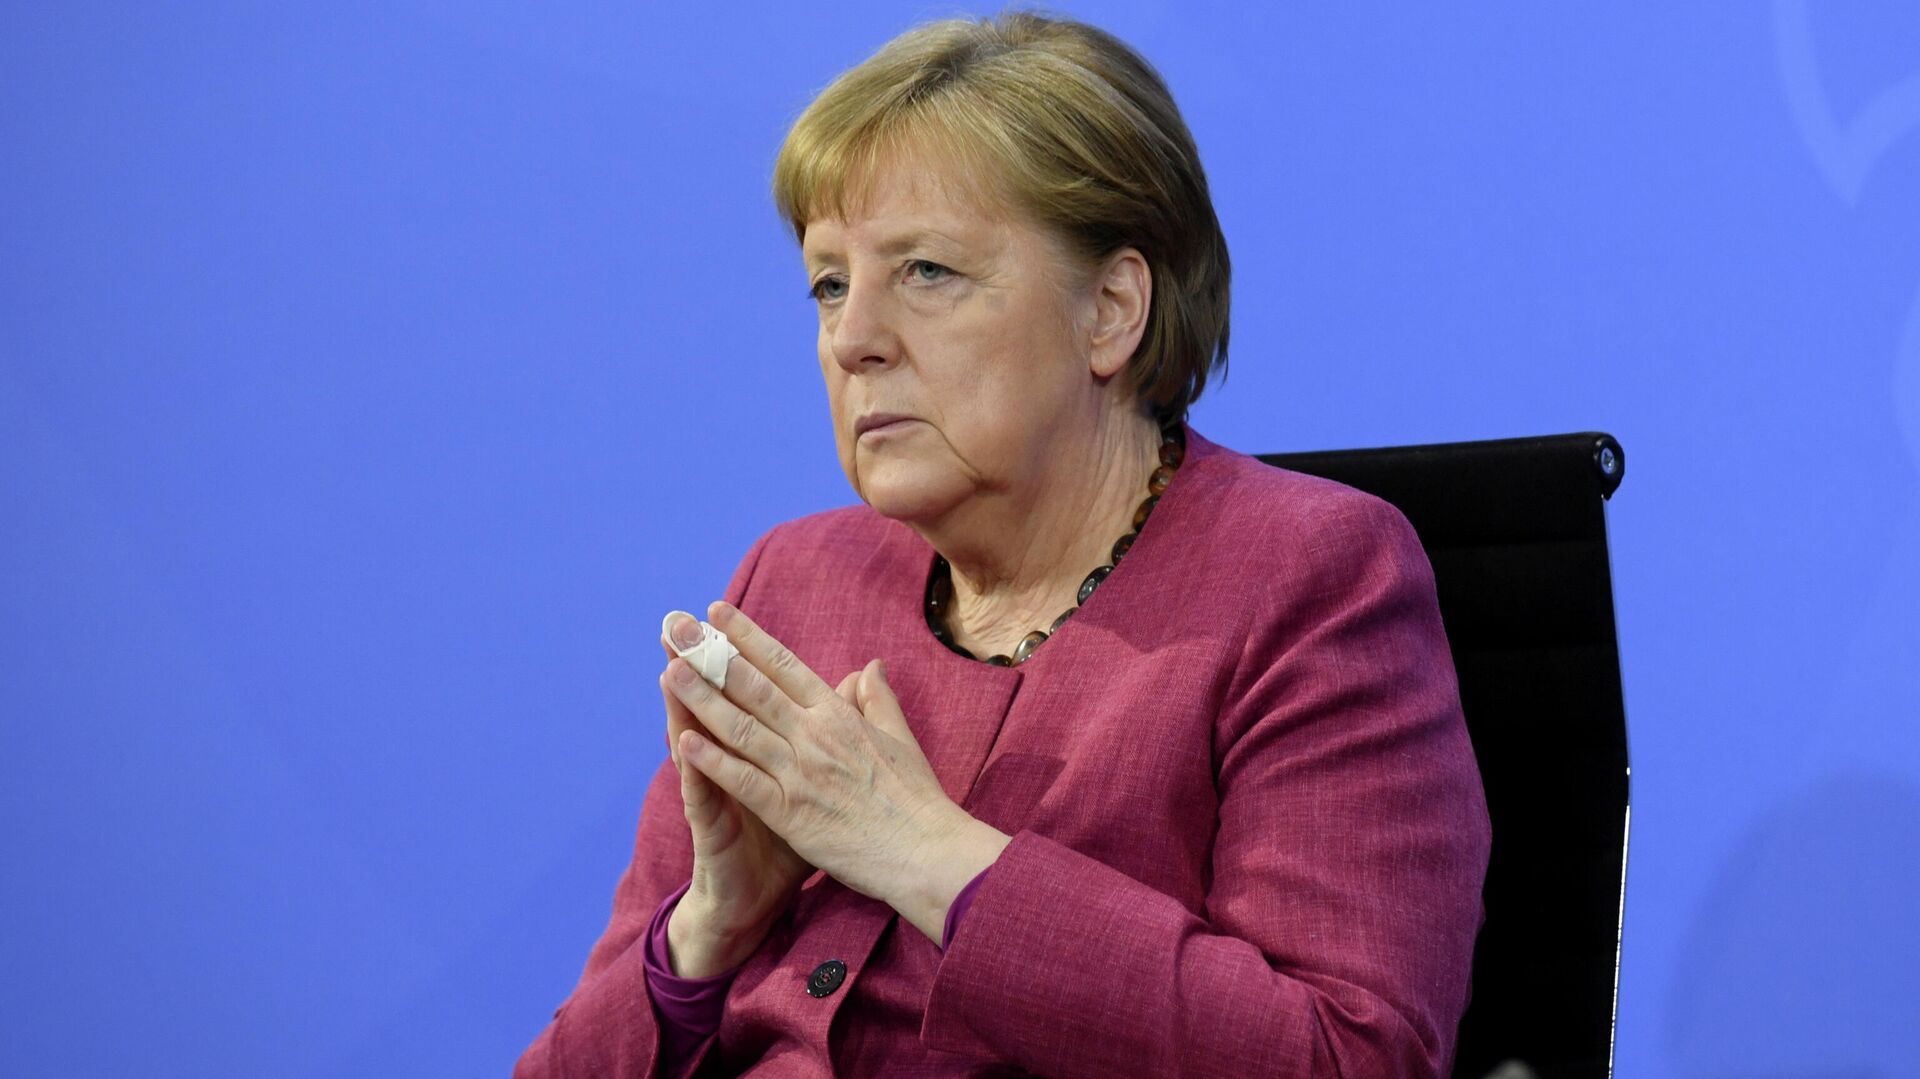 Angela Merkel, canciller de Alemania - Sputnik Mundo, 1920, 19.06.2021